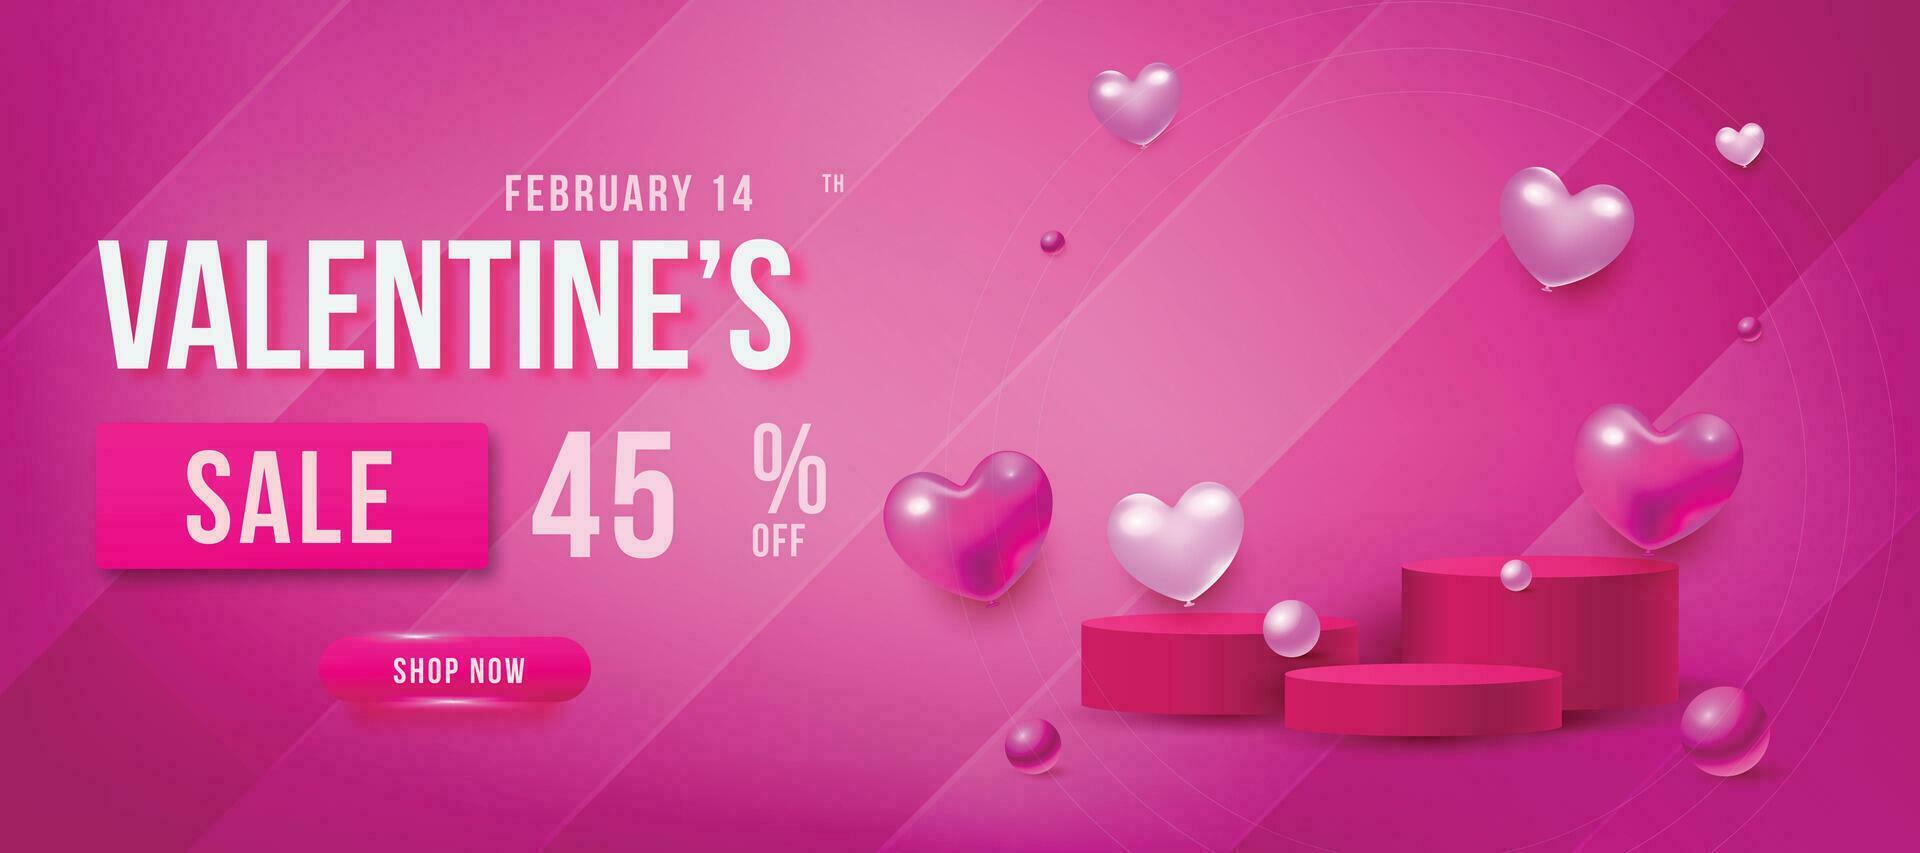 valentines dag försäljning affisch med röd och rosa hjärtan bakgrund vektor